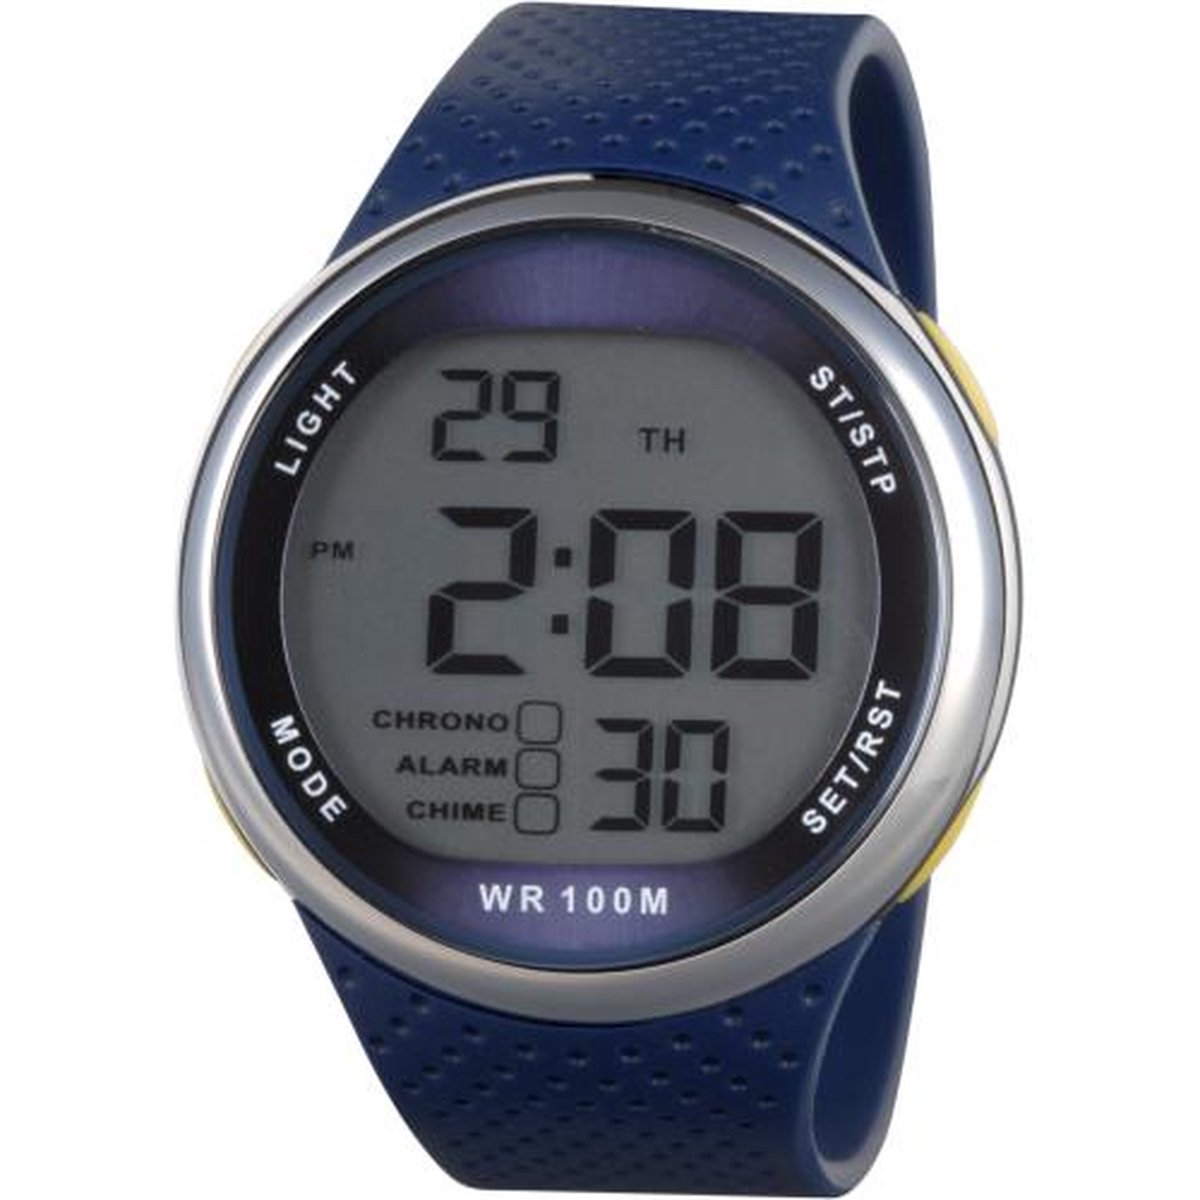 Xonix GJ-006 - Horloge - Digitaal - Heren - Mannen - Rond - Siliconen band - ABS - Cijfers - Achtergrondverlichting - Alarm - Start-Stop - Chronograaf - Tweede tijdzone - Waterdicht - 10 ATM - Donkerblauw - Zilverkleurig - Geel